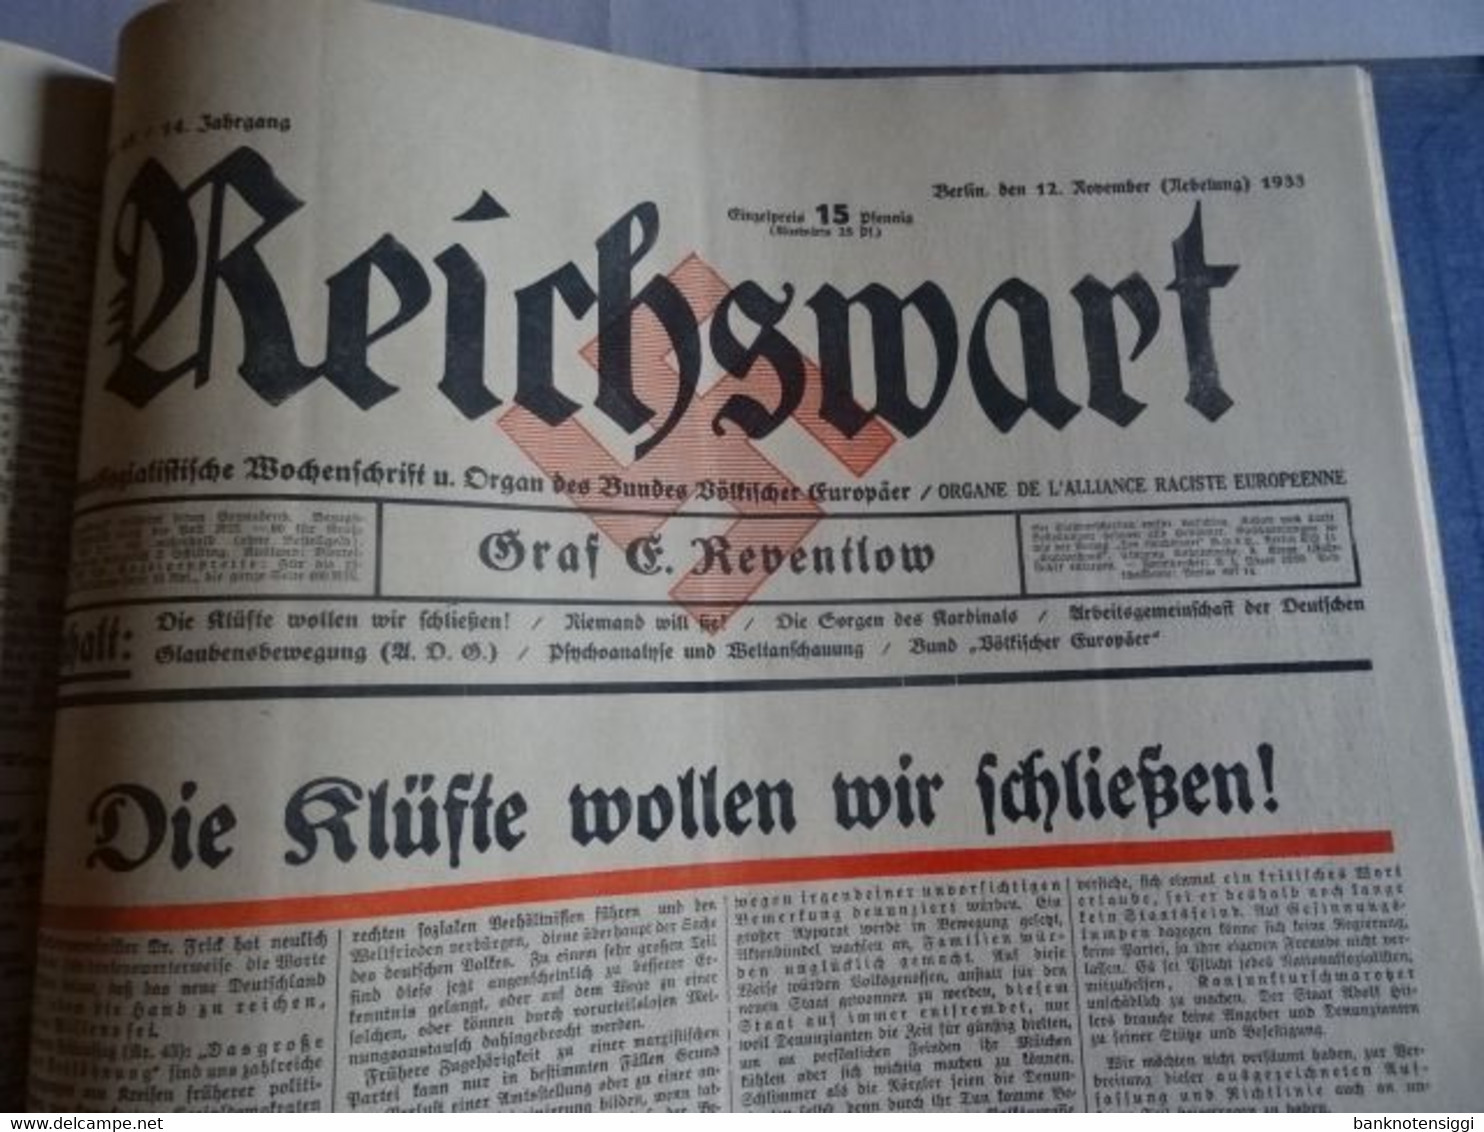 Zeitung "Reichswart Nr.1 januar bis Nr.52 Dezember 1933 als Buch gebunden